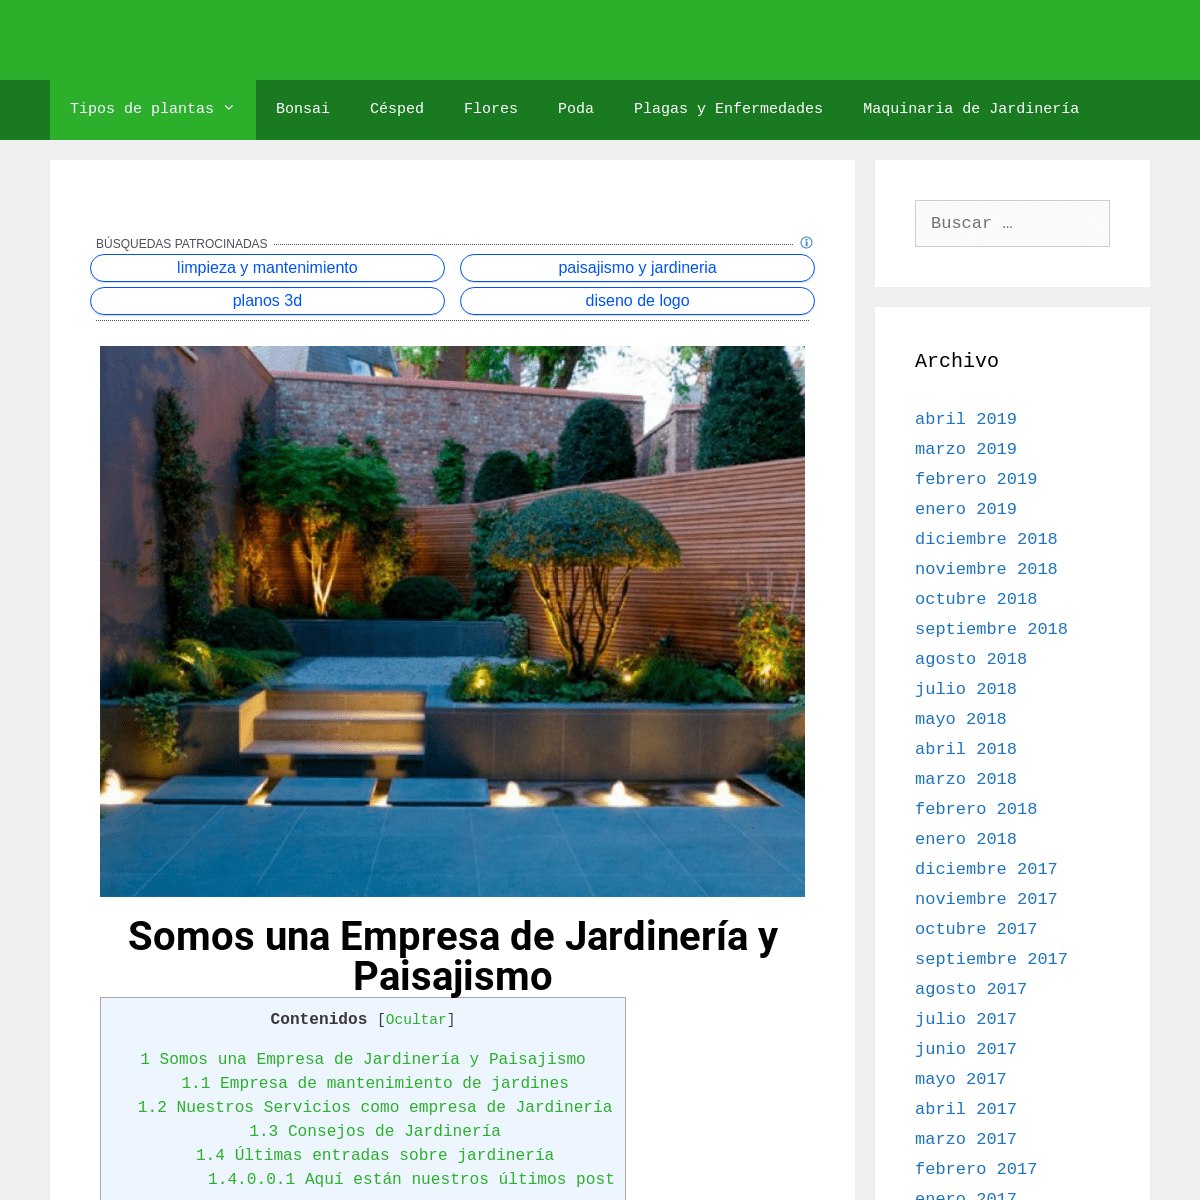 Empresa de Jardinería y Paisajismo |Como-plantar.org